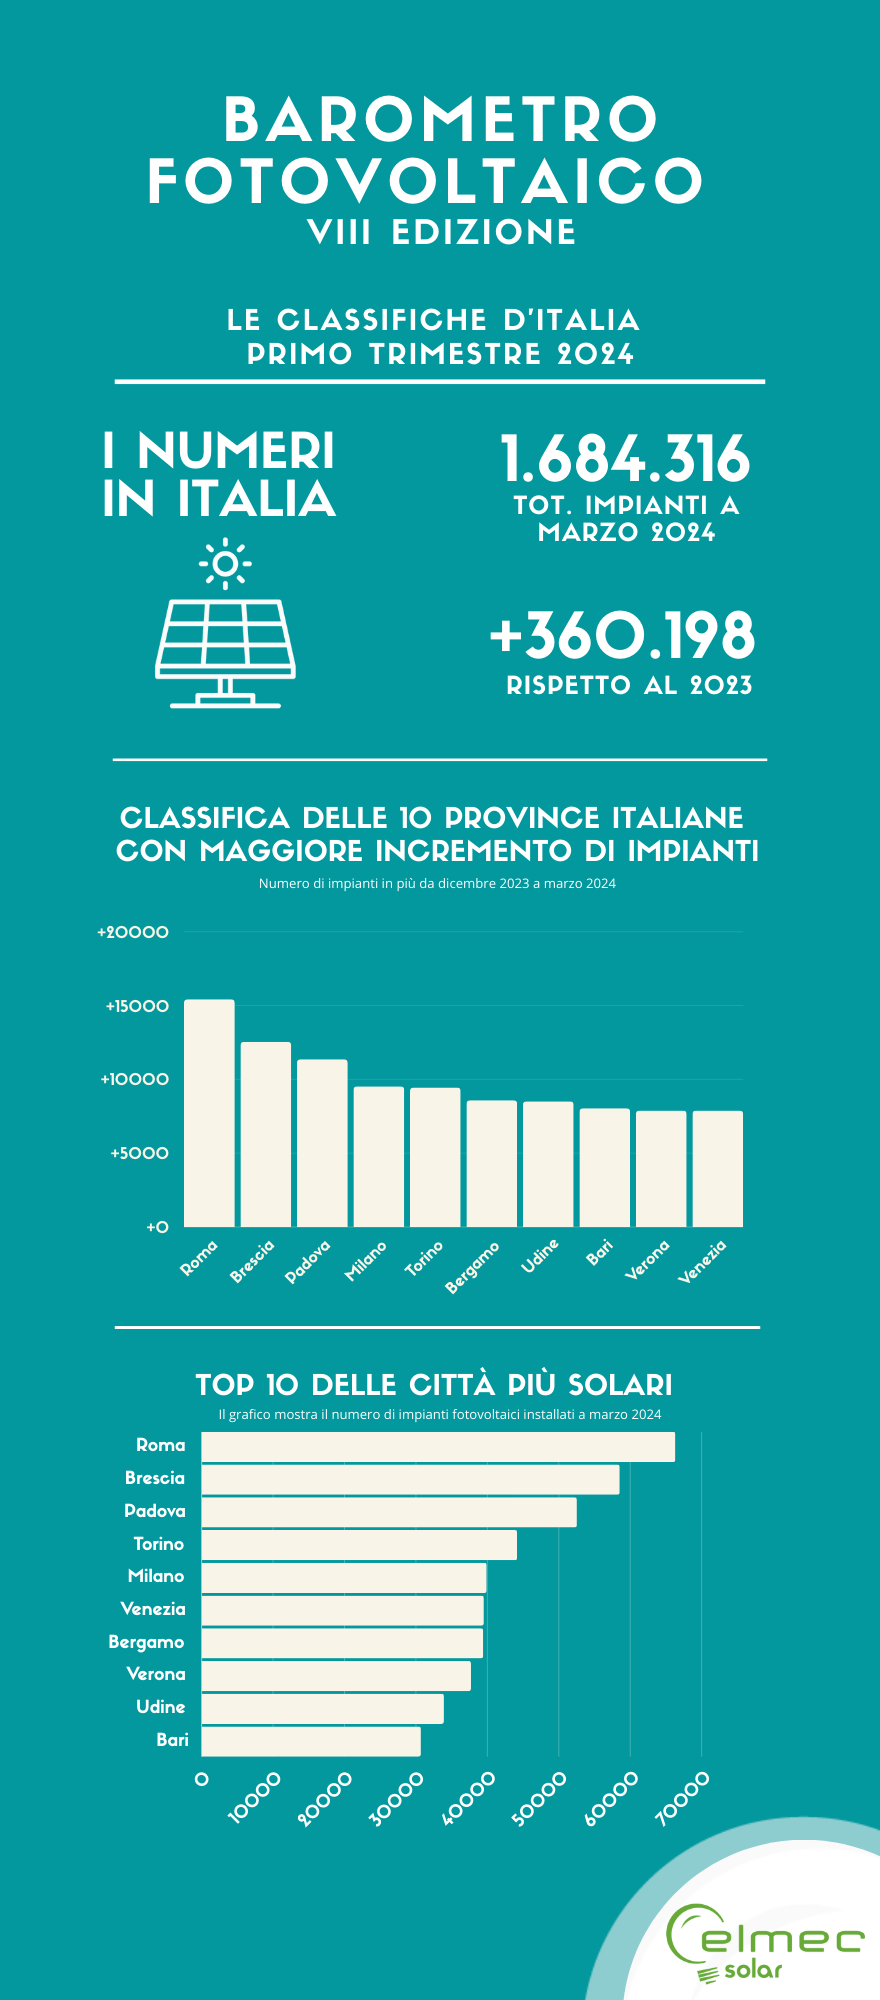 Fotovoltaico: Più di 350.000 nuovi impianti nel corso dell'ultimo anno